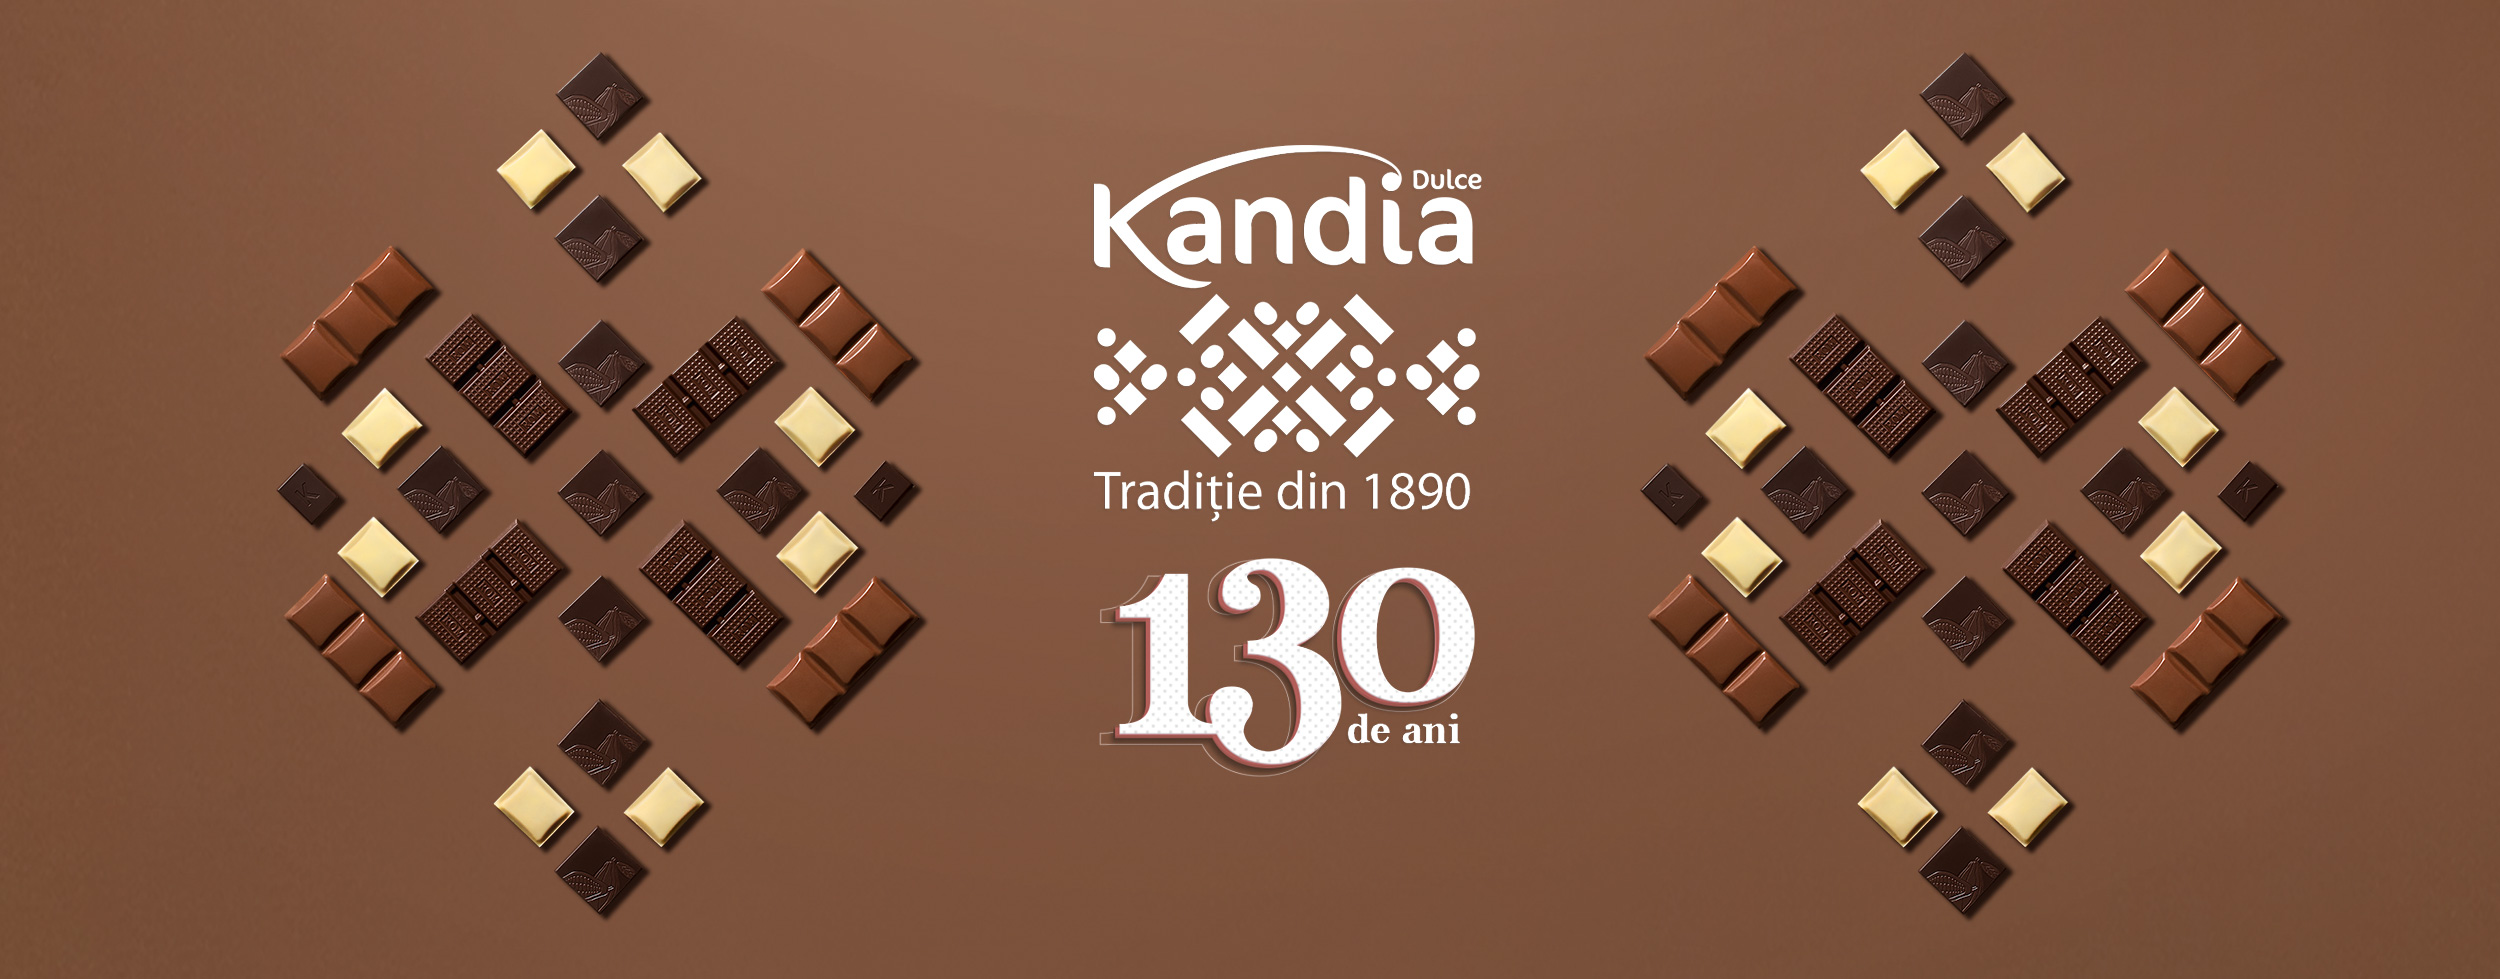 130 years of Kandia Dulce